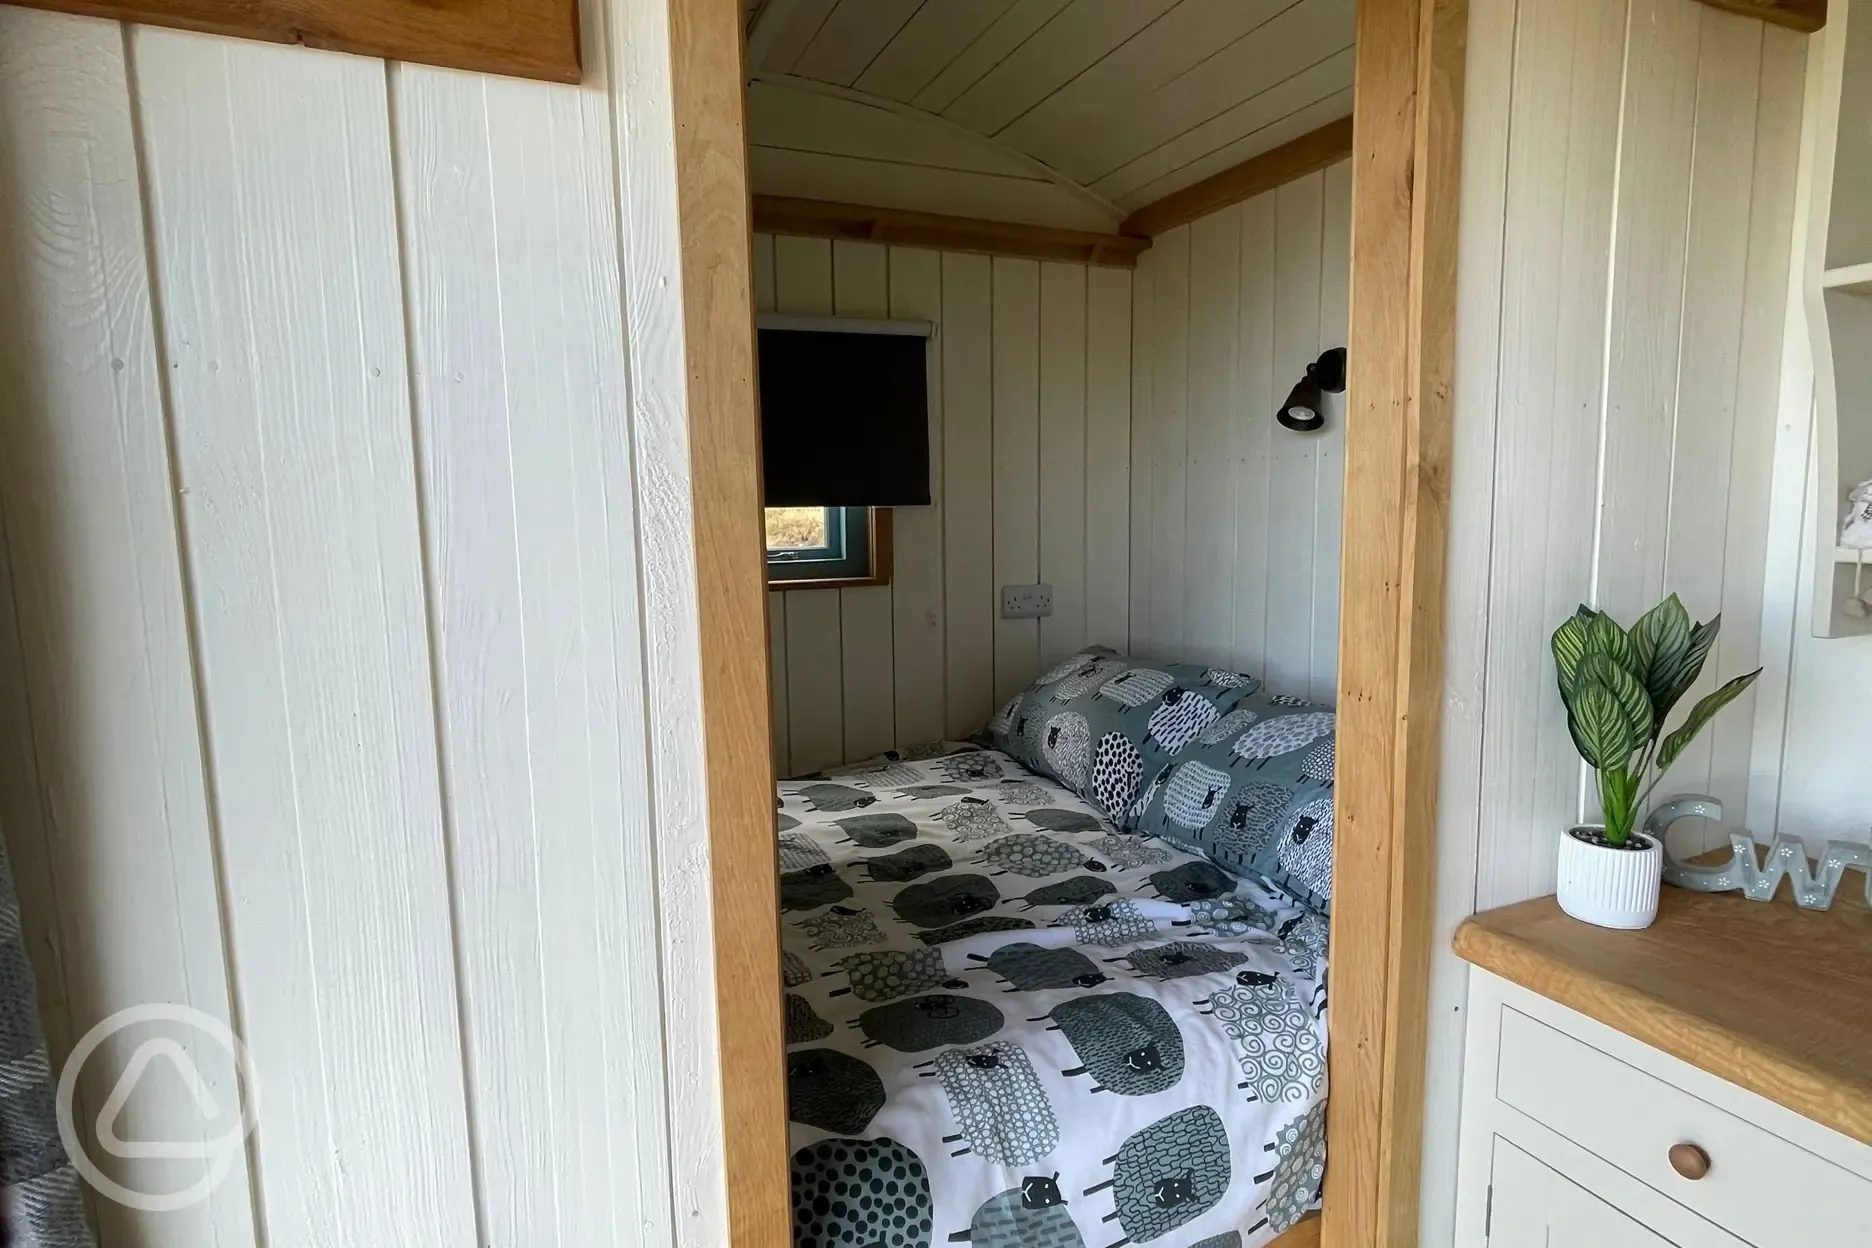 Shepherd's hut bedroom